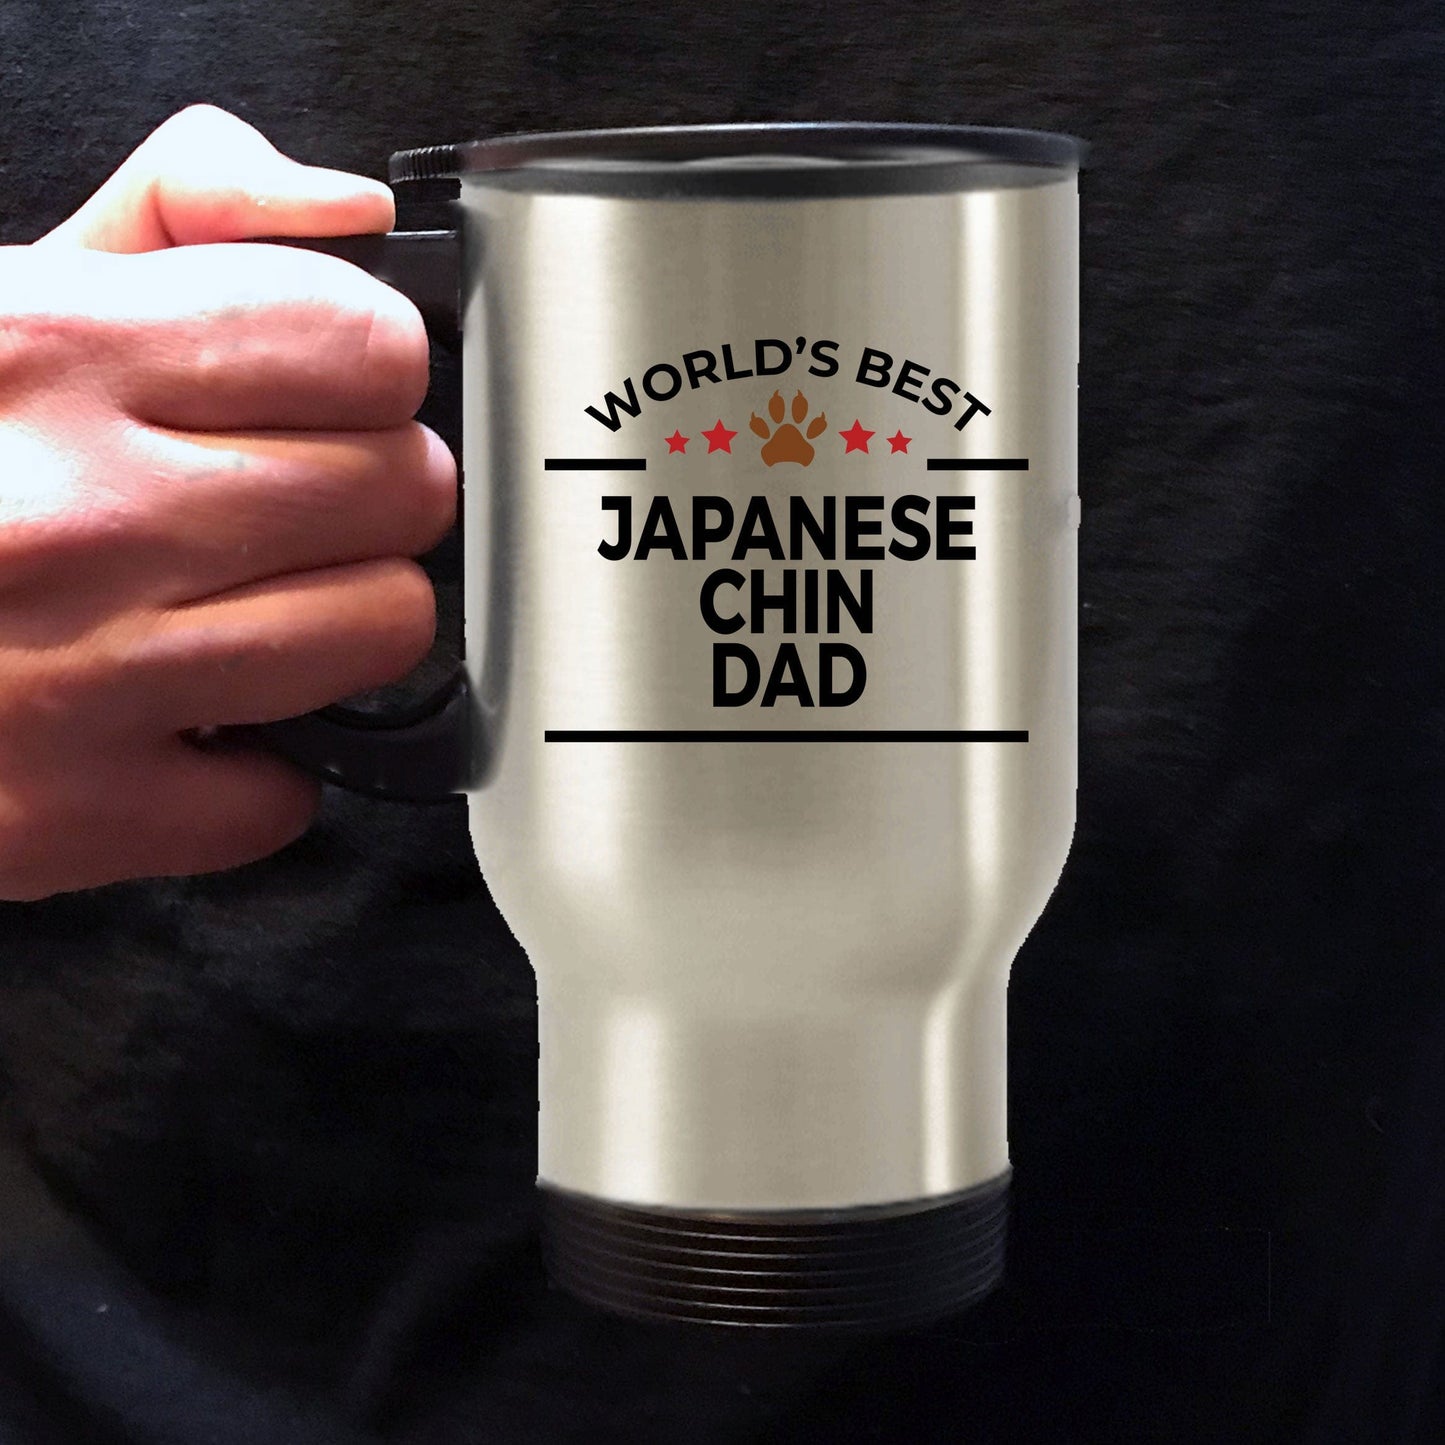 Japanese Chin Dog Dad Travel Mug